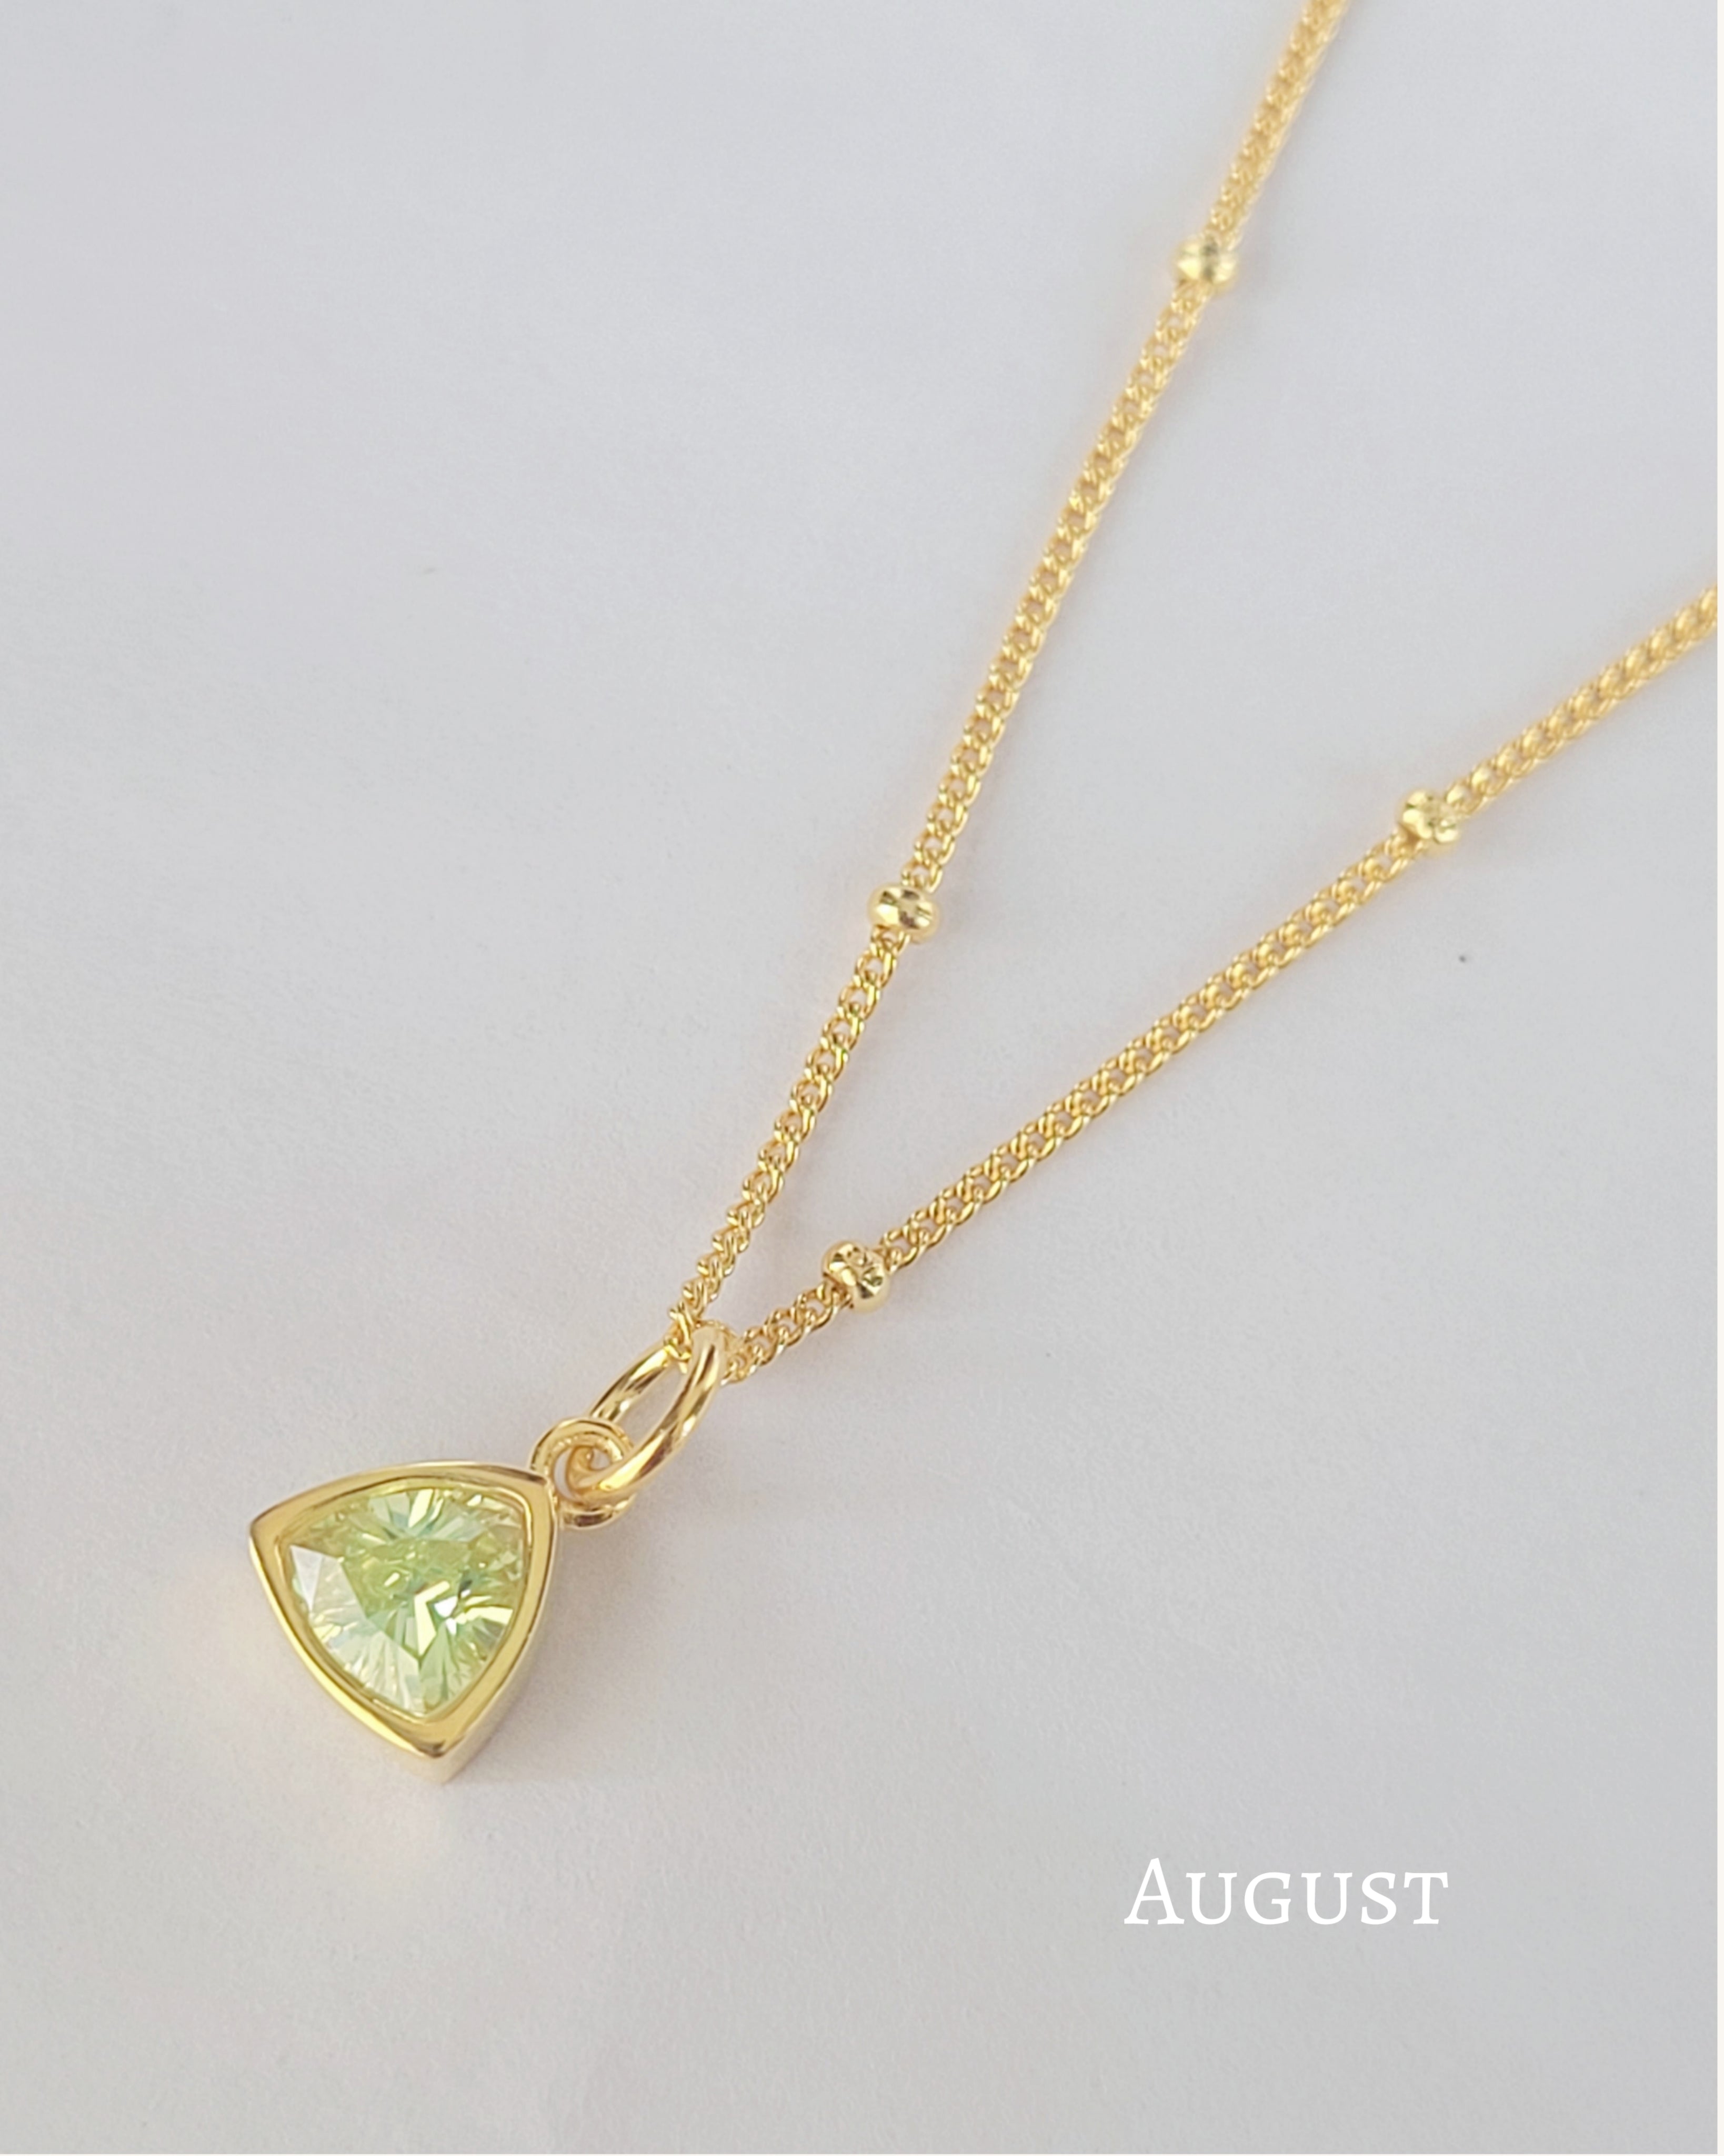 August birthstone necklace 